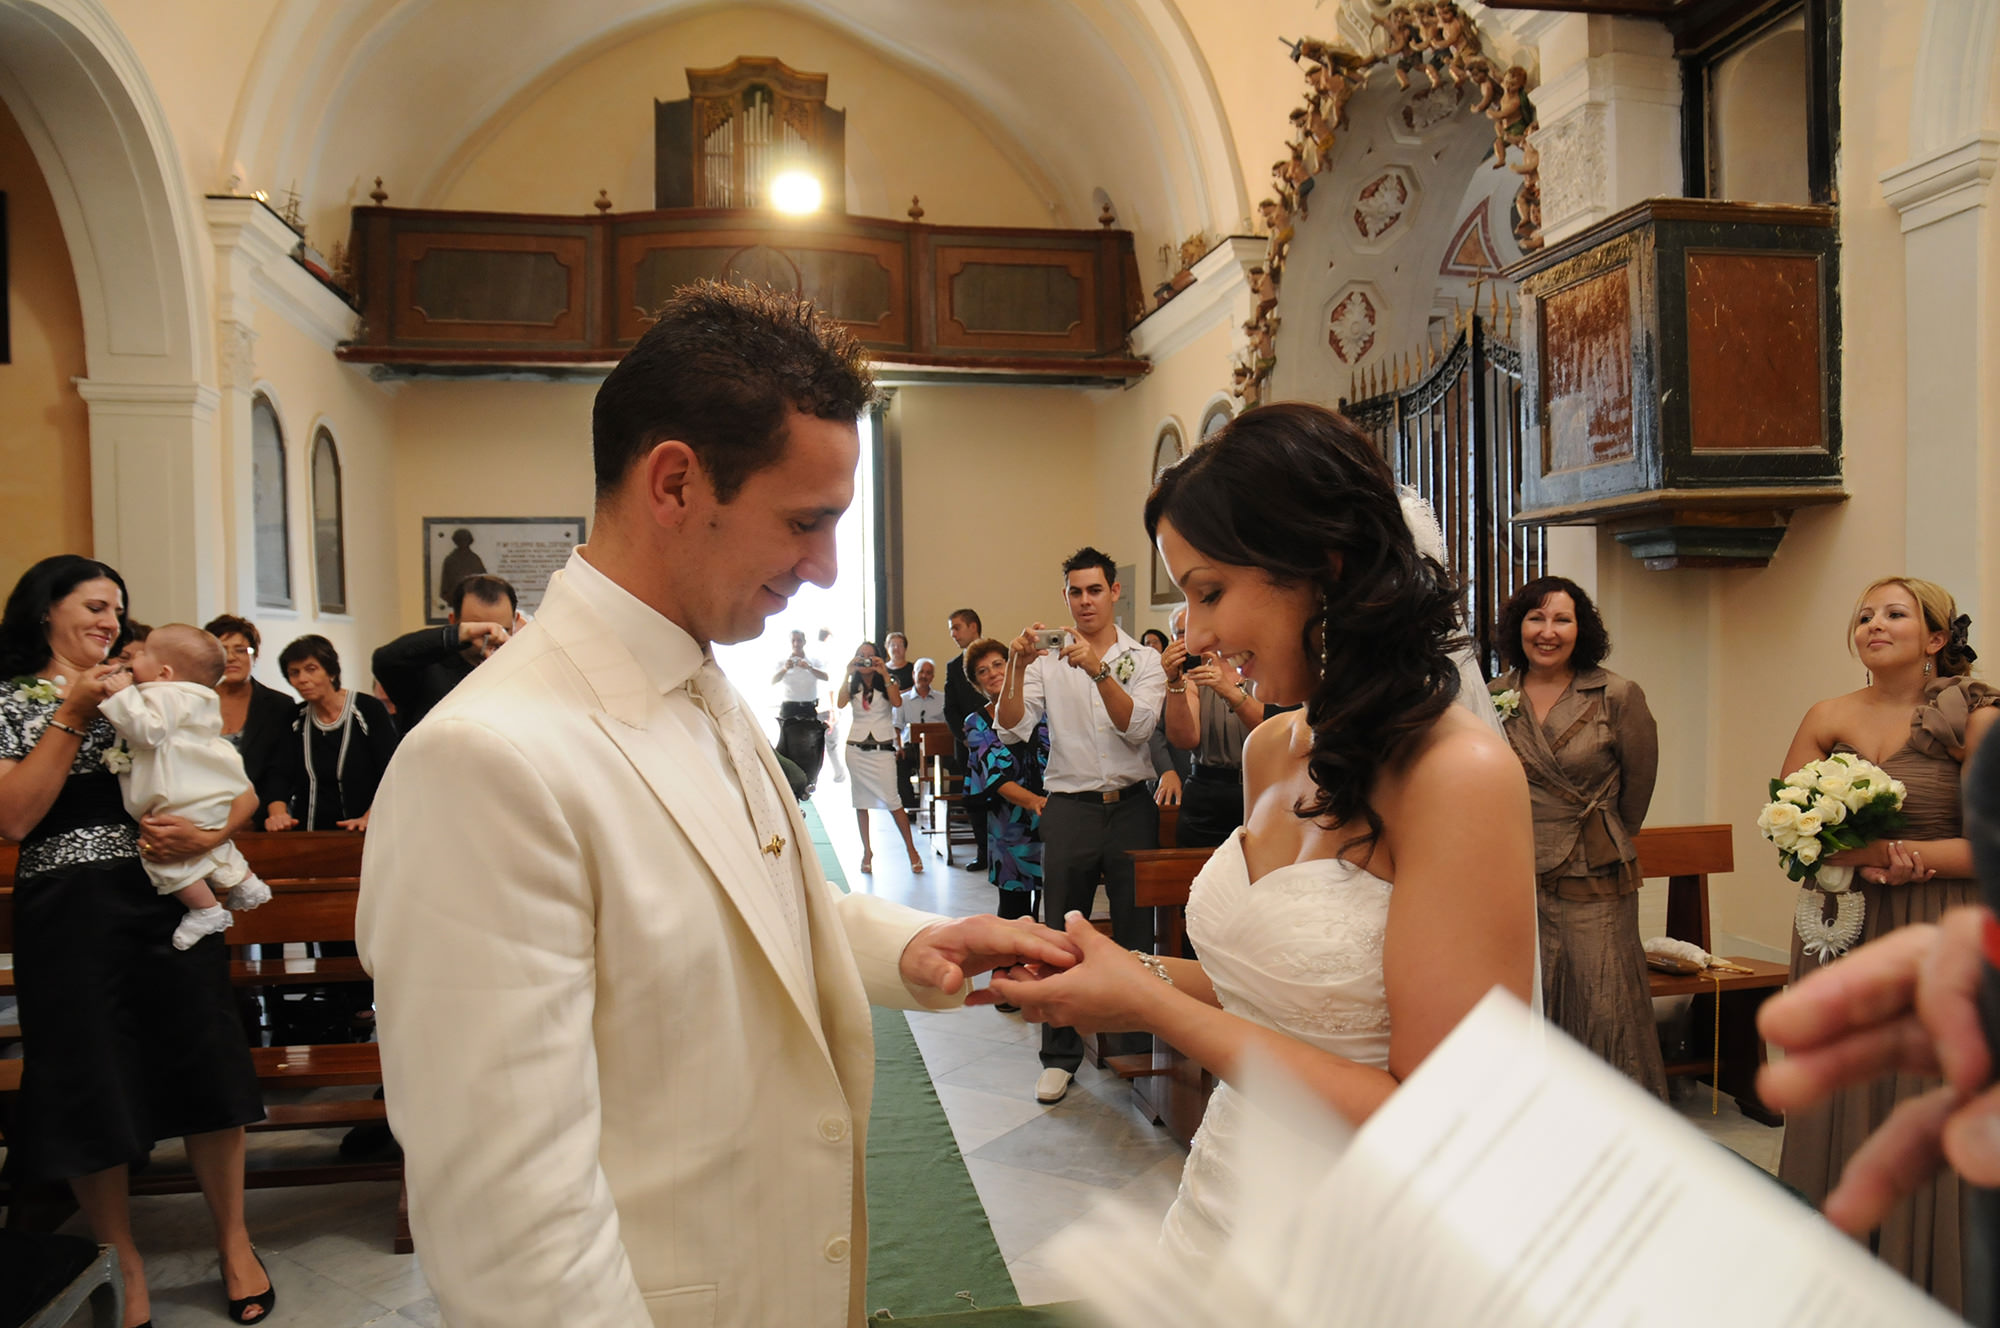 Wedding Ischia